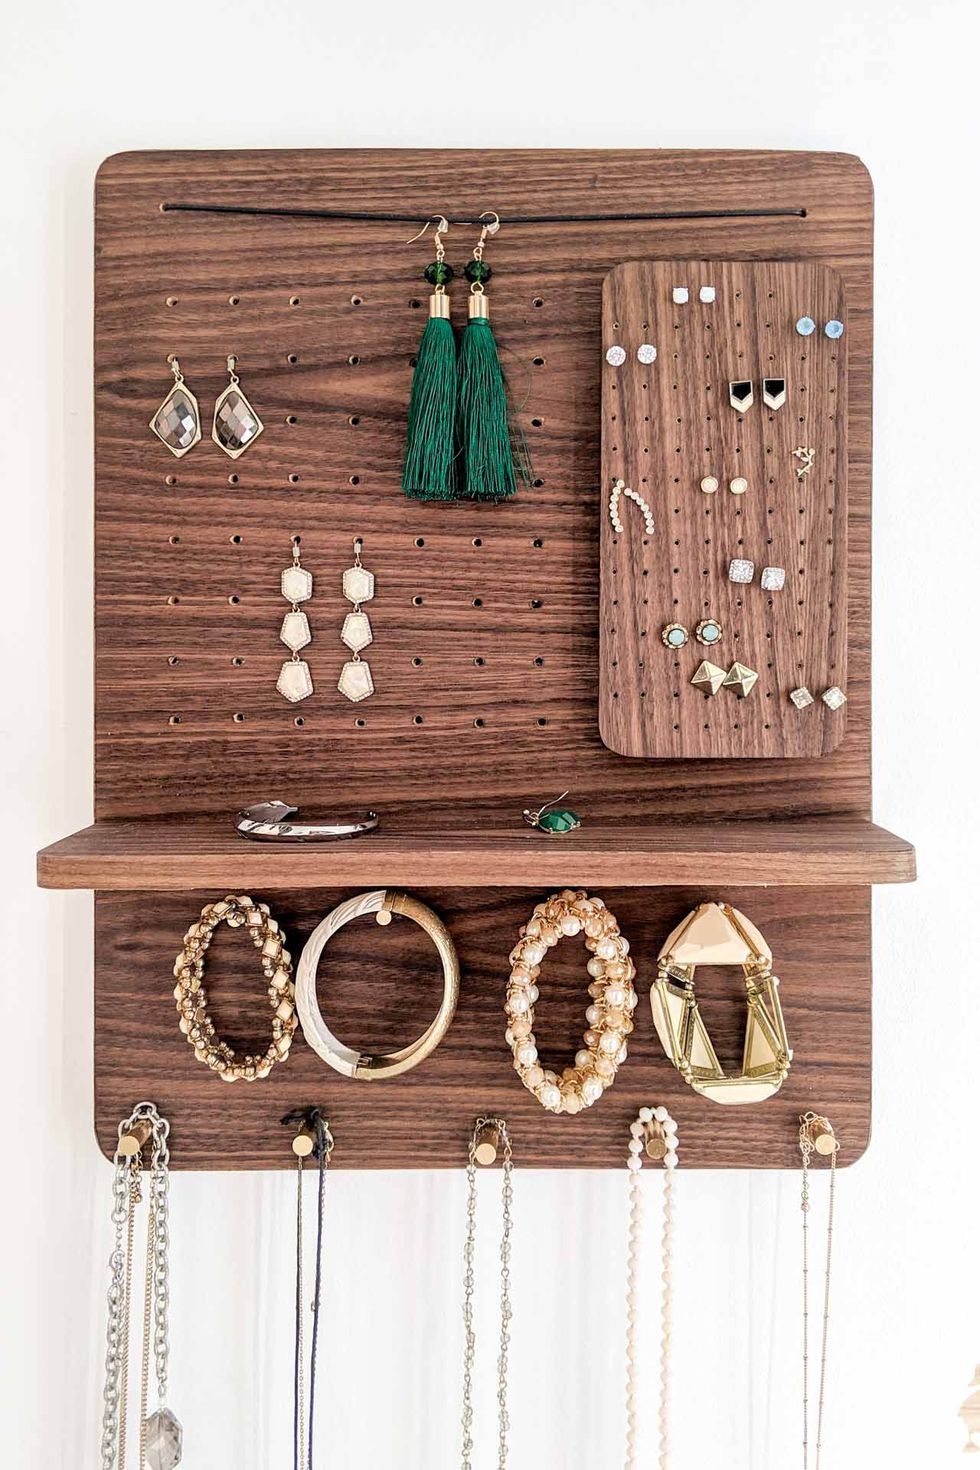 6 Best Mens Jewelry Box Ideas & 14 Stylish Jewelry Organizer